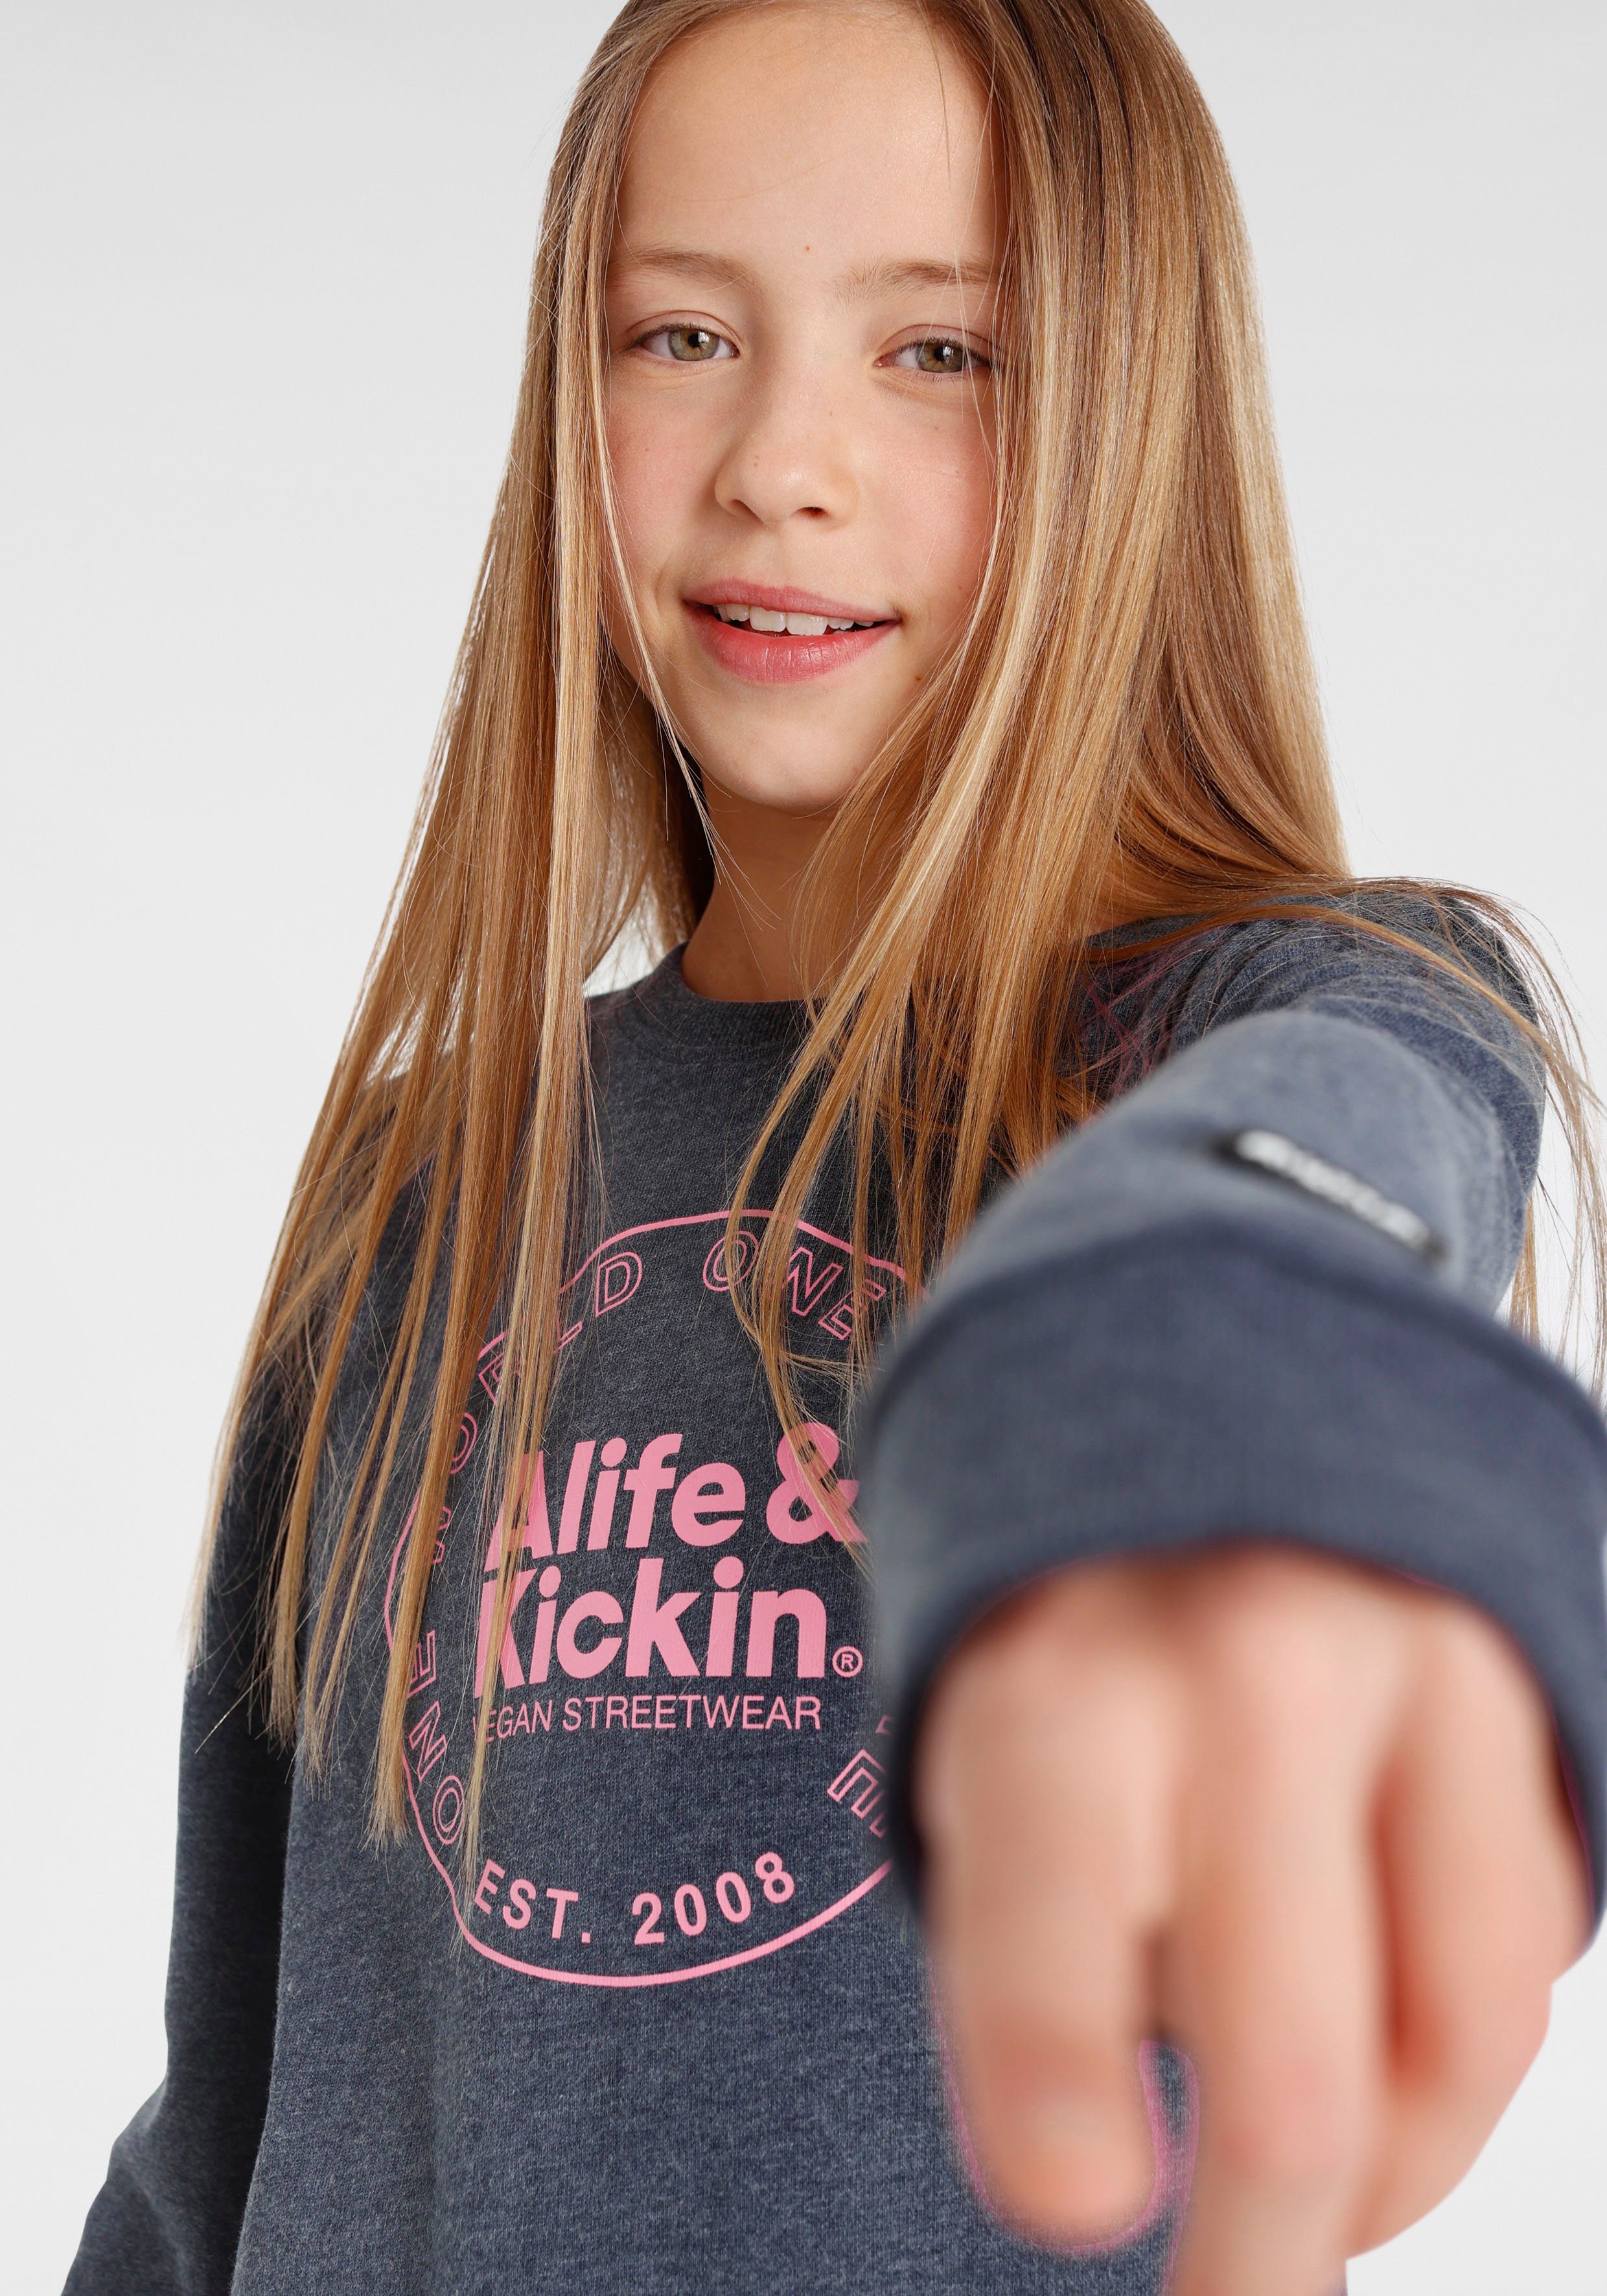 Kickin Kids. für & Alife & NEUE Alife Sweatshirt Druck MARKE! Logo Kickin mit